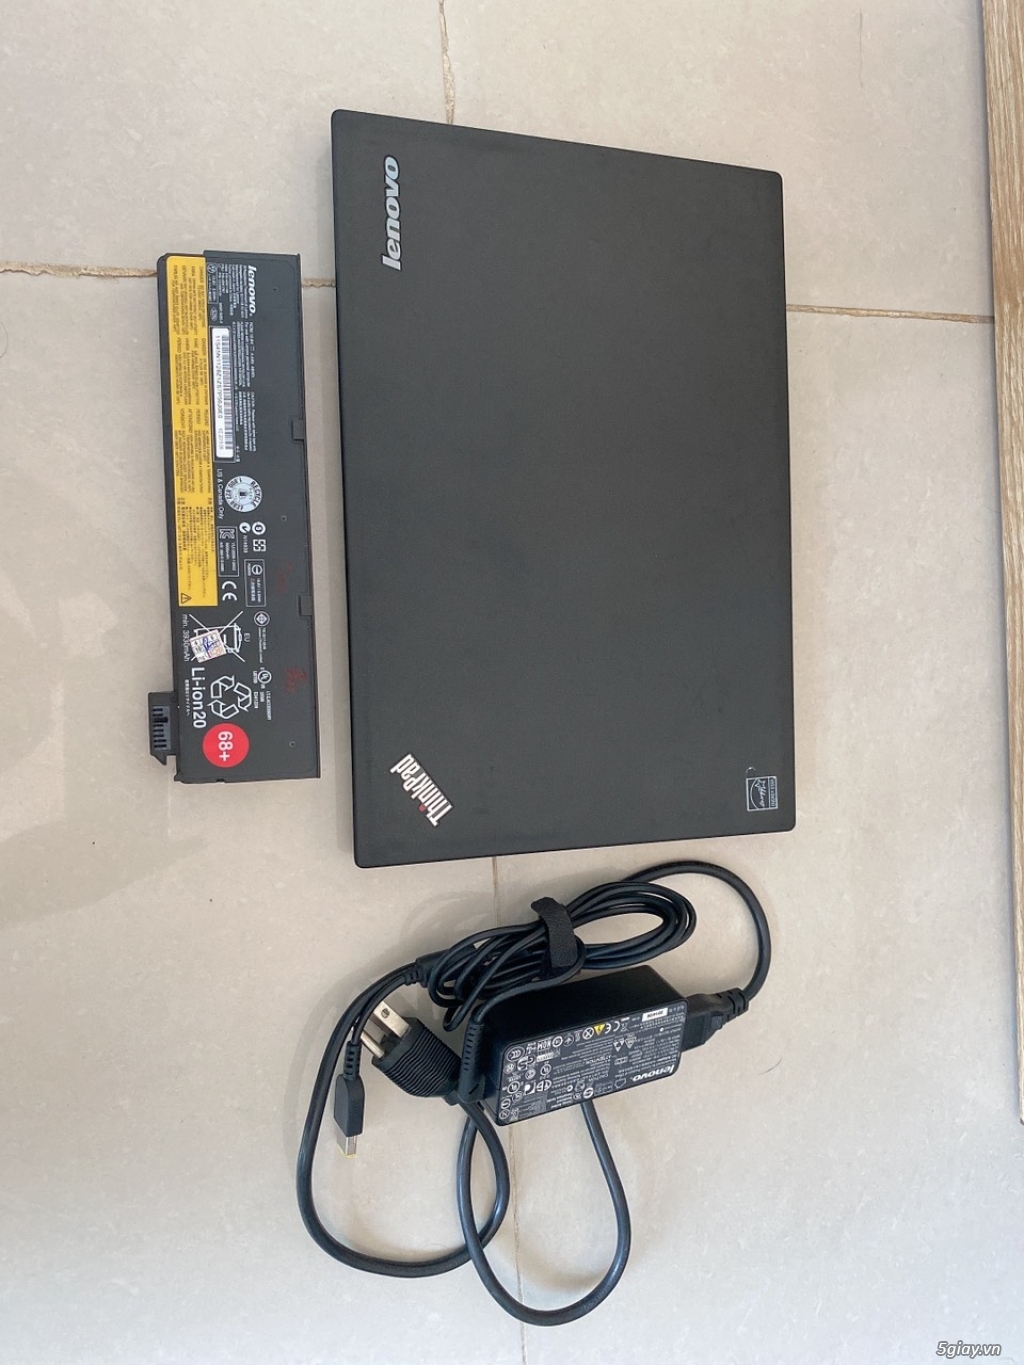 ThinkPad X250 I7 Ram 8G led phím đẹp Máy chuẩn USA - 2